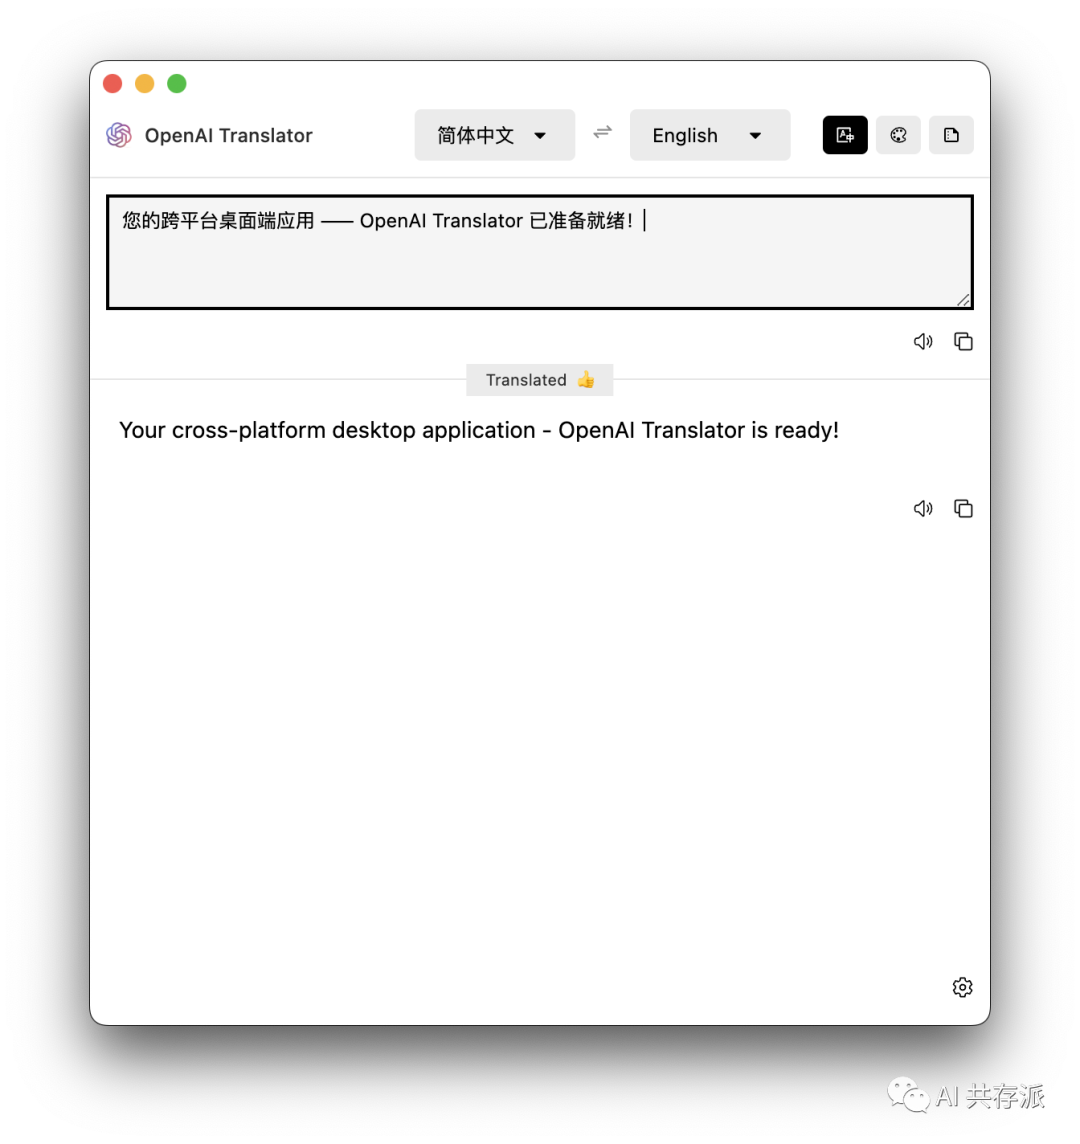 openai-translator：基于 ChatGPT API 的划词翻译浏览器插件和跨平台桌面端应用